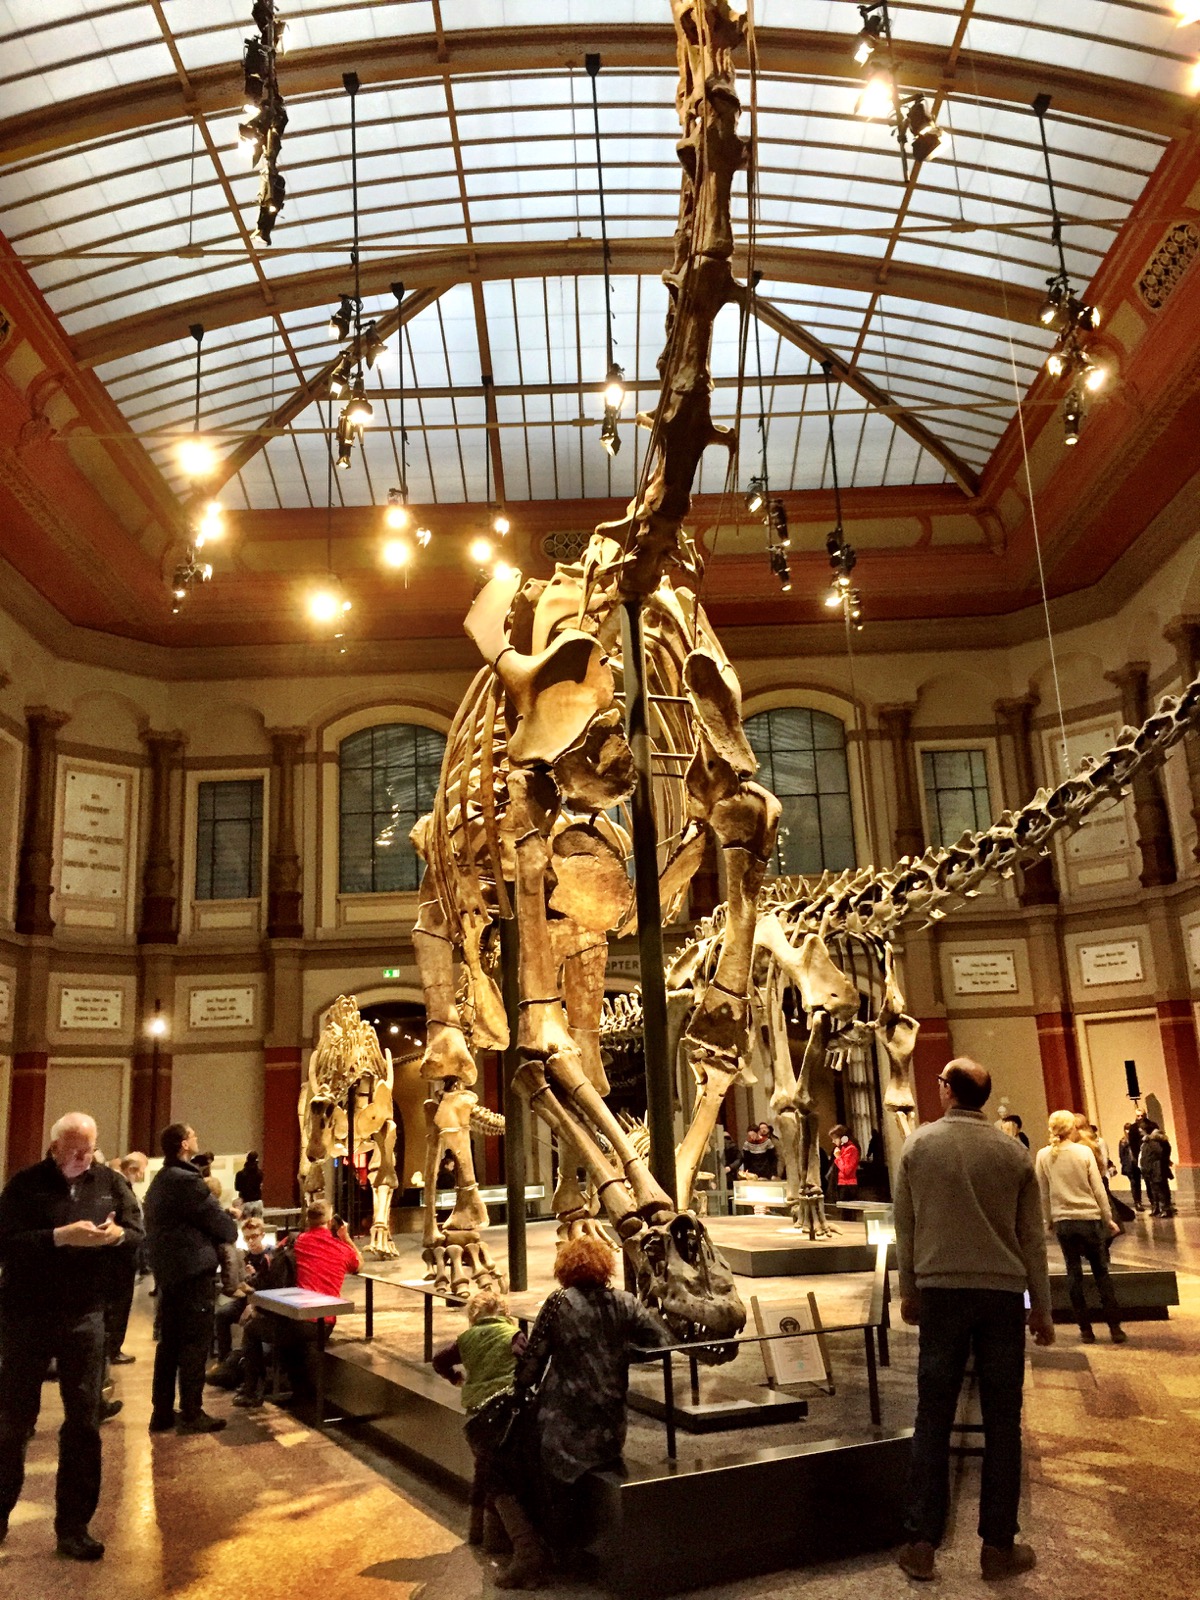 Esqueletos de vários dinossauros, com um maior em destaque, no centro.